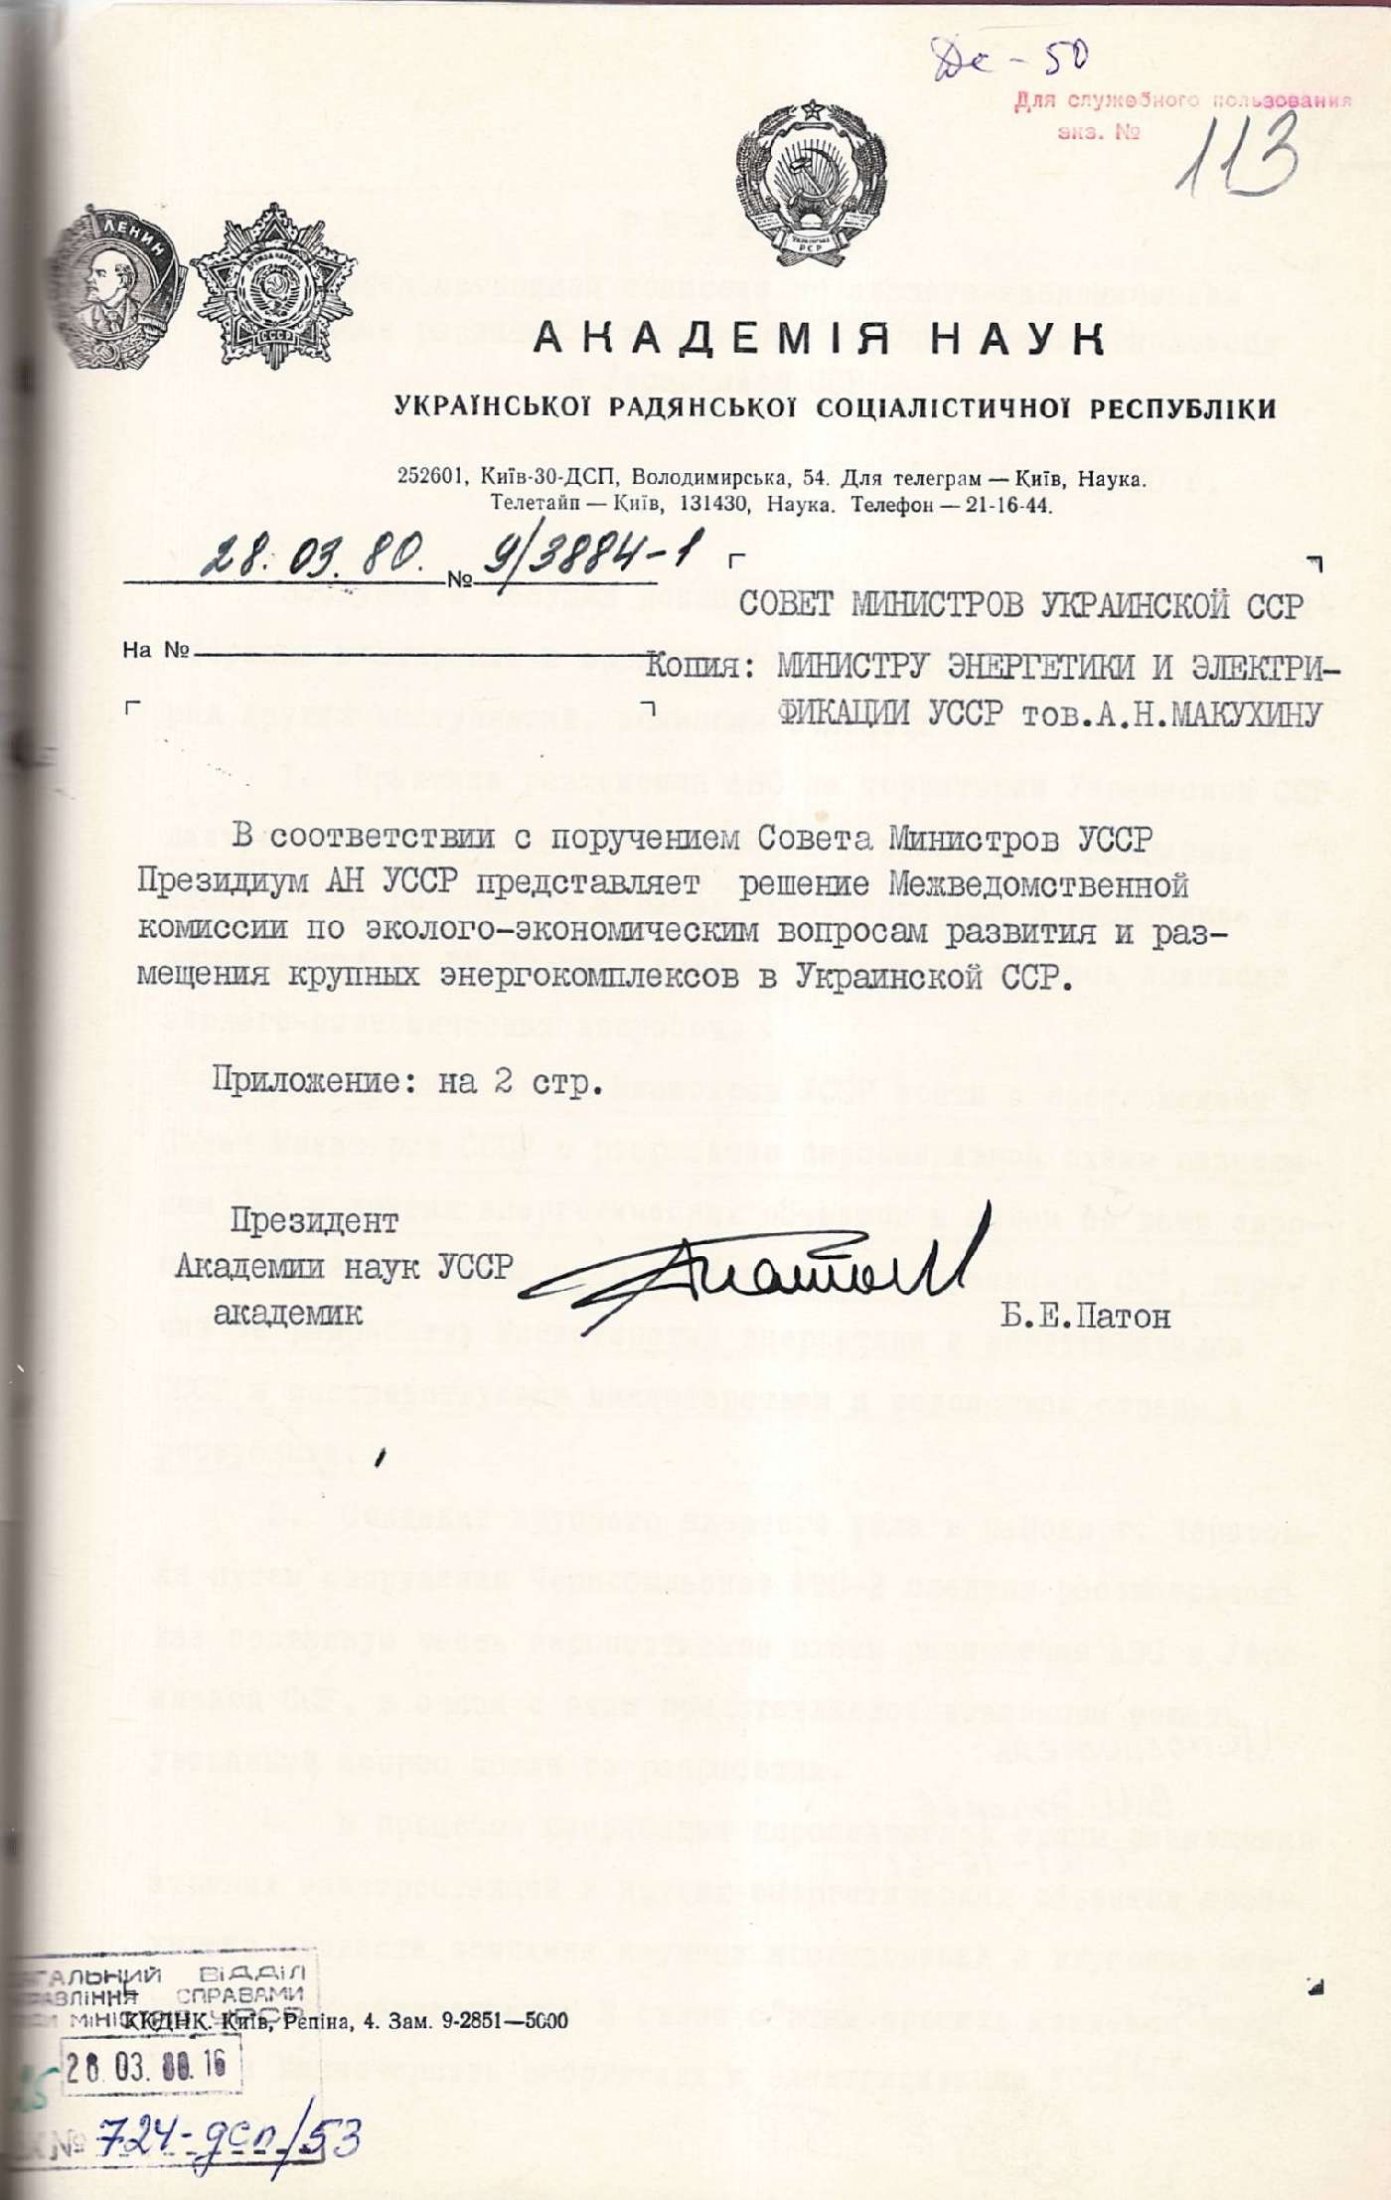 Рішення Міжвідомчої комісії по еколого-економічним питанням розвитку і розміщенню великих енергокомплексів в Української РСР. 28 березня 1980 р.